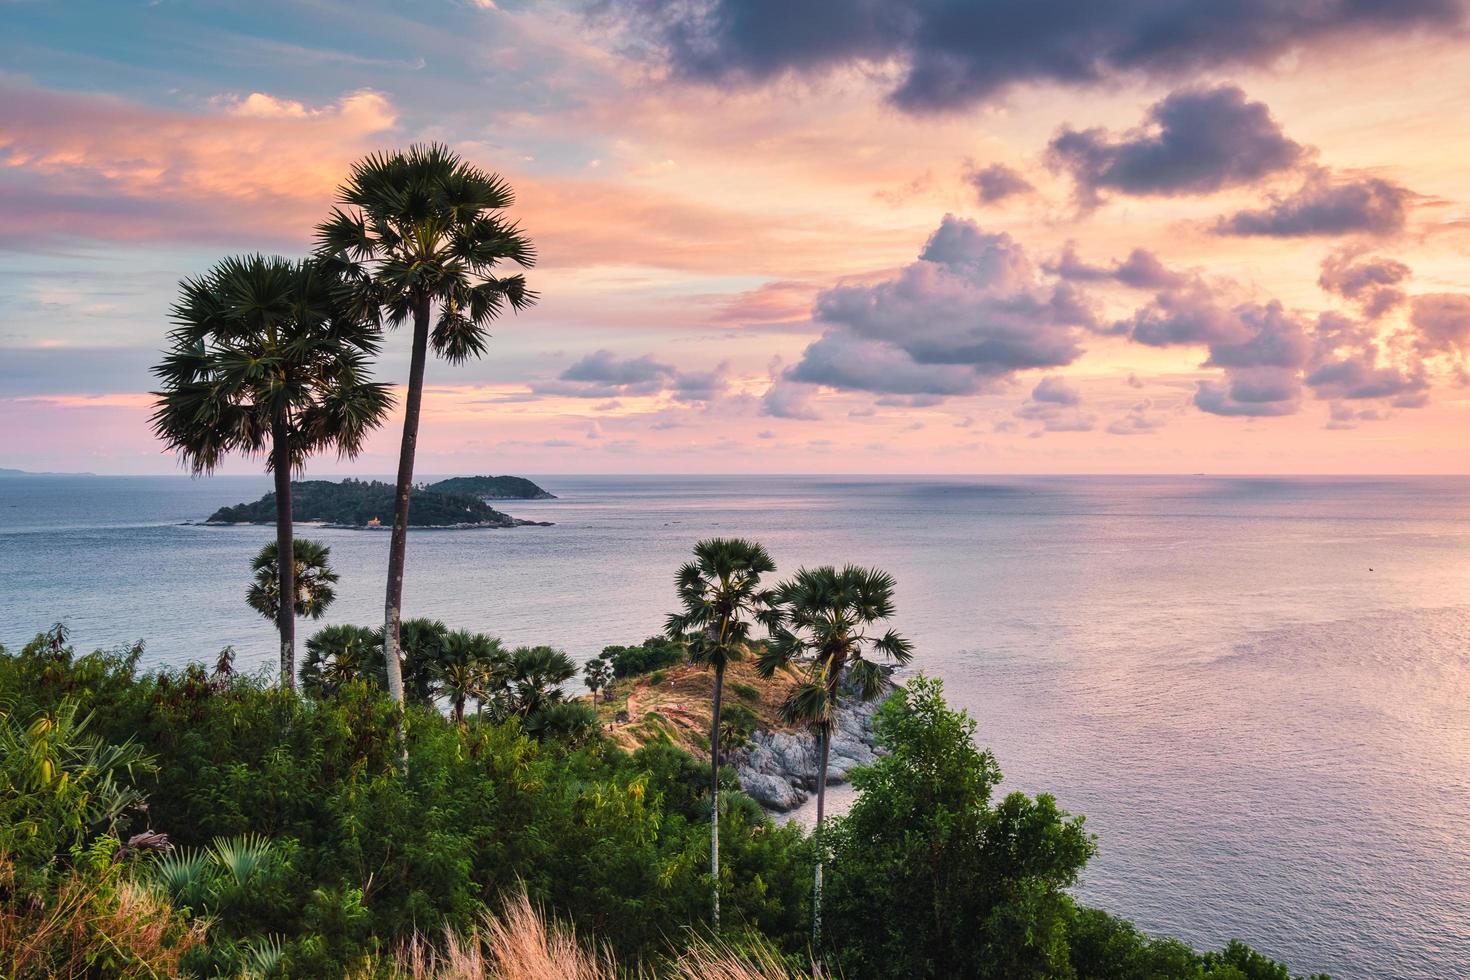 viewpoint laem promthep cape com céu colorido e palmeira de açúcar no pôr do sol em phuket foto